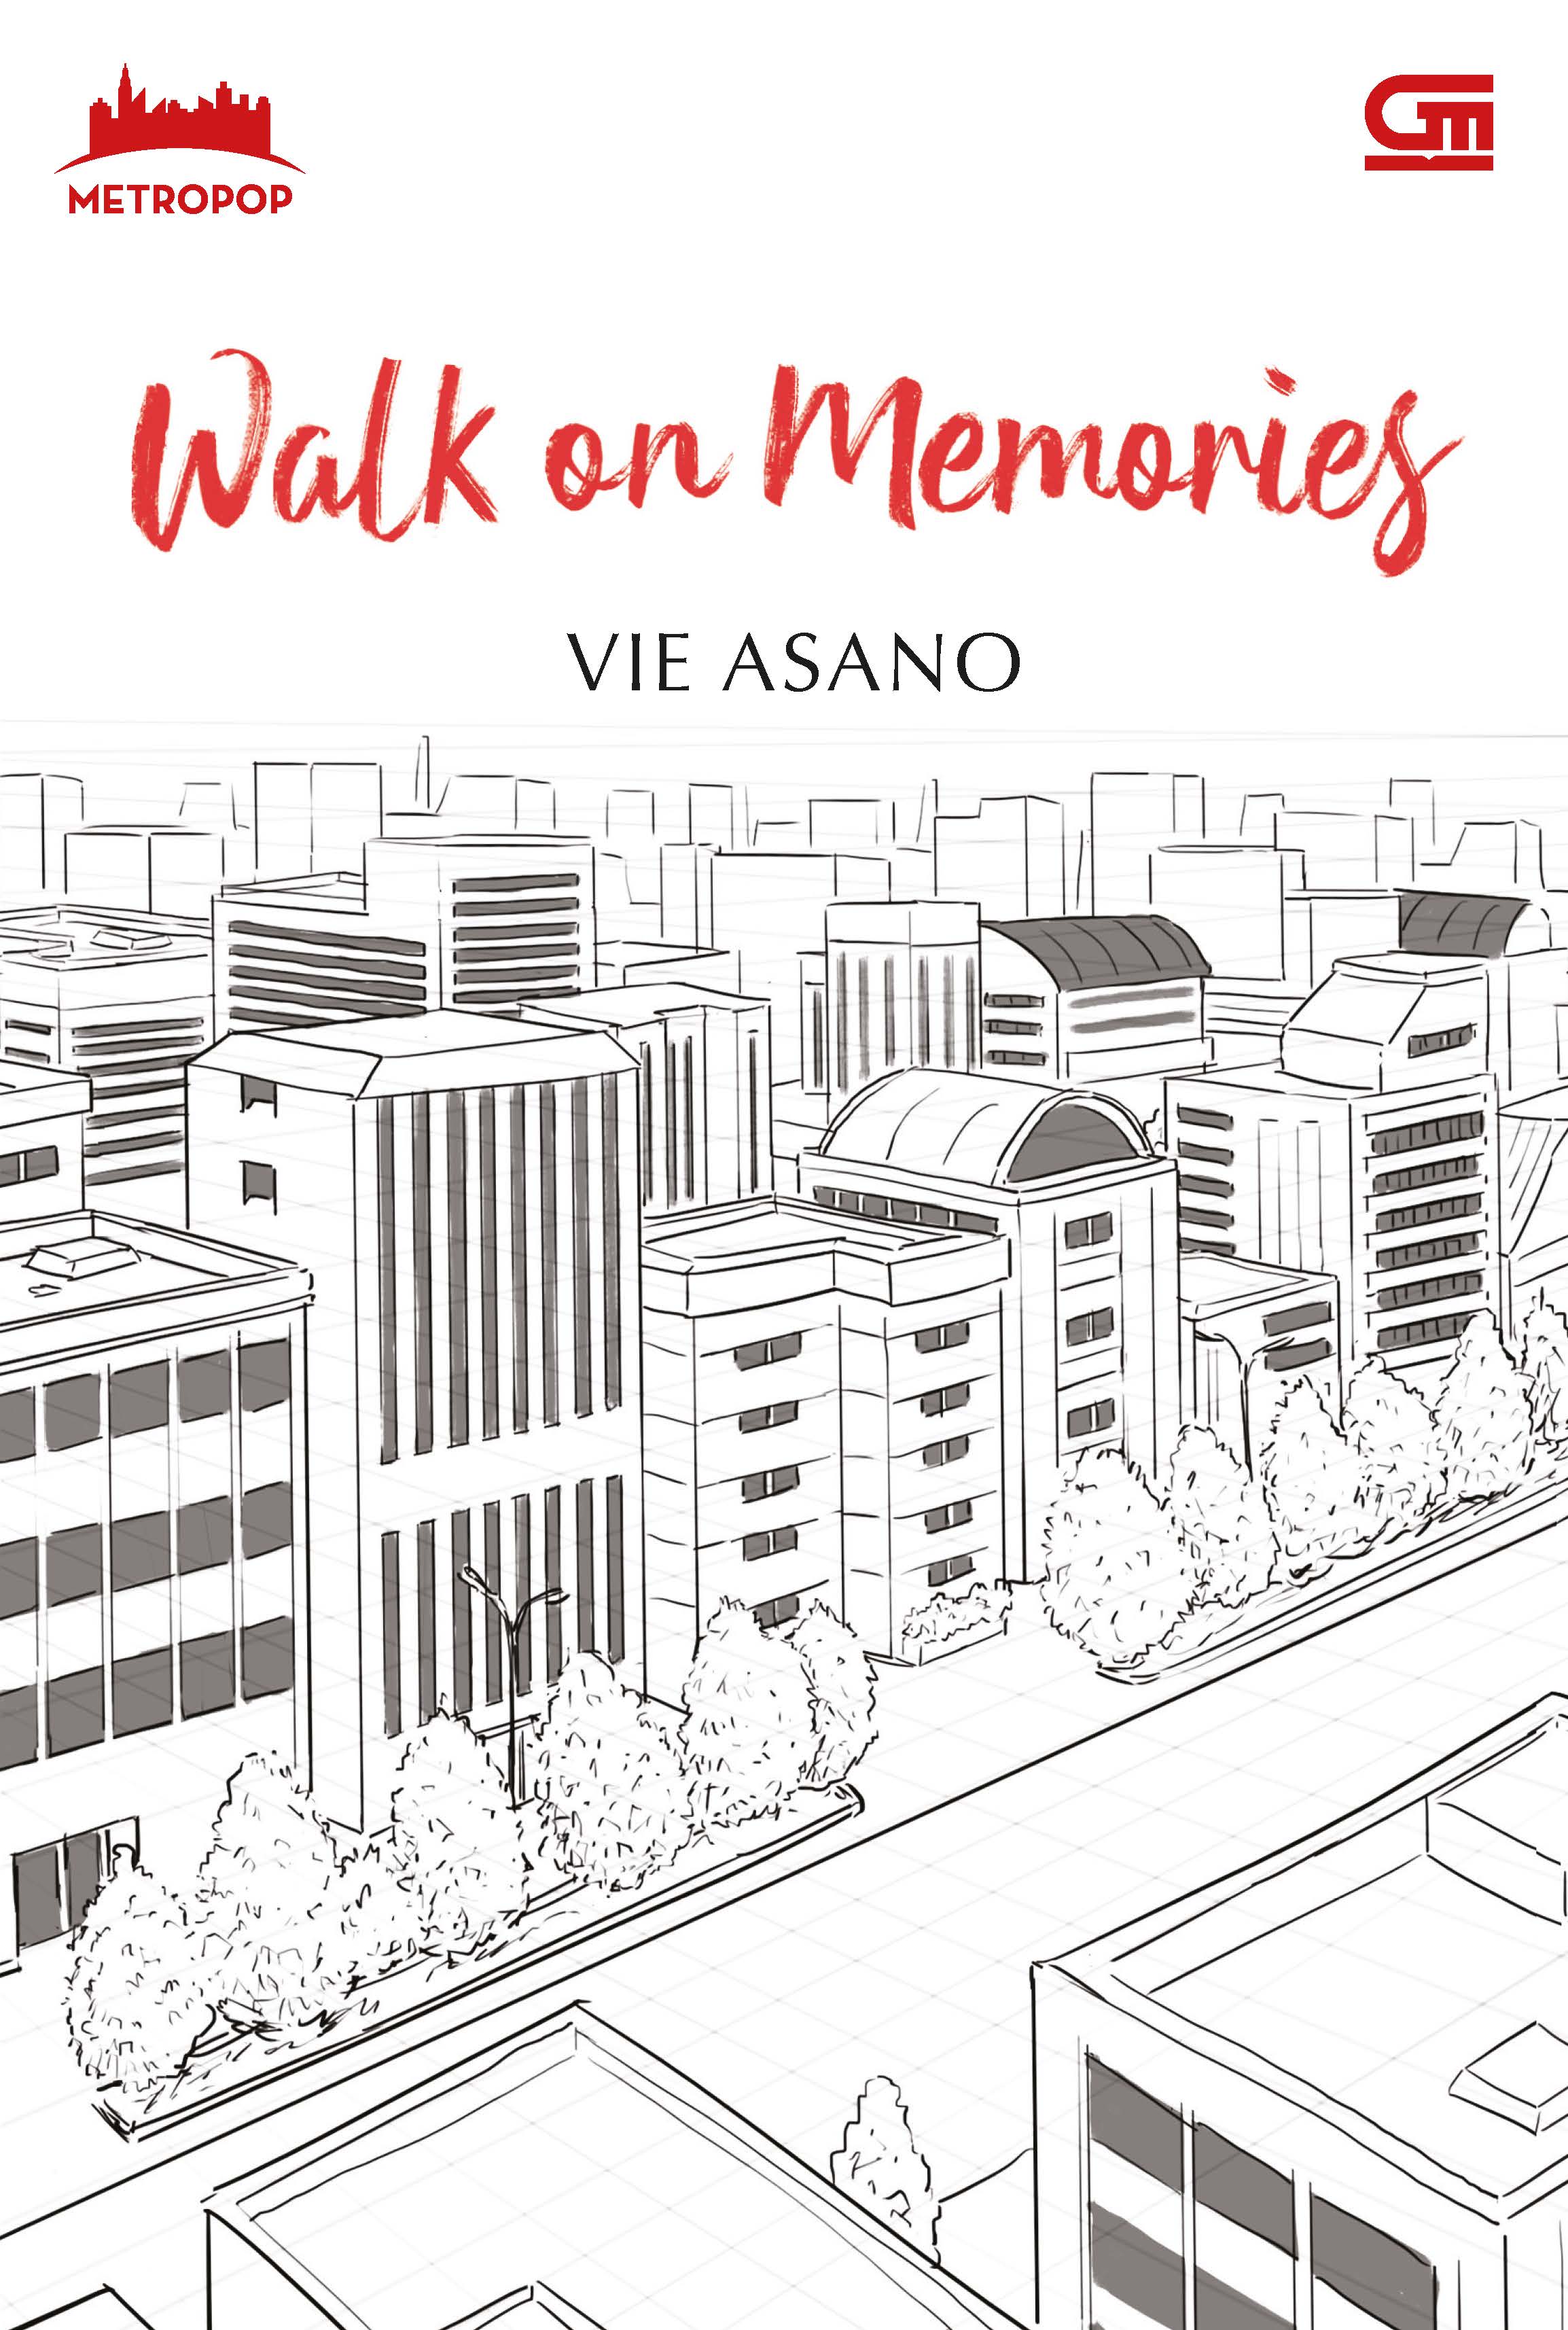 MetroPop: Walk on Memories